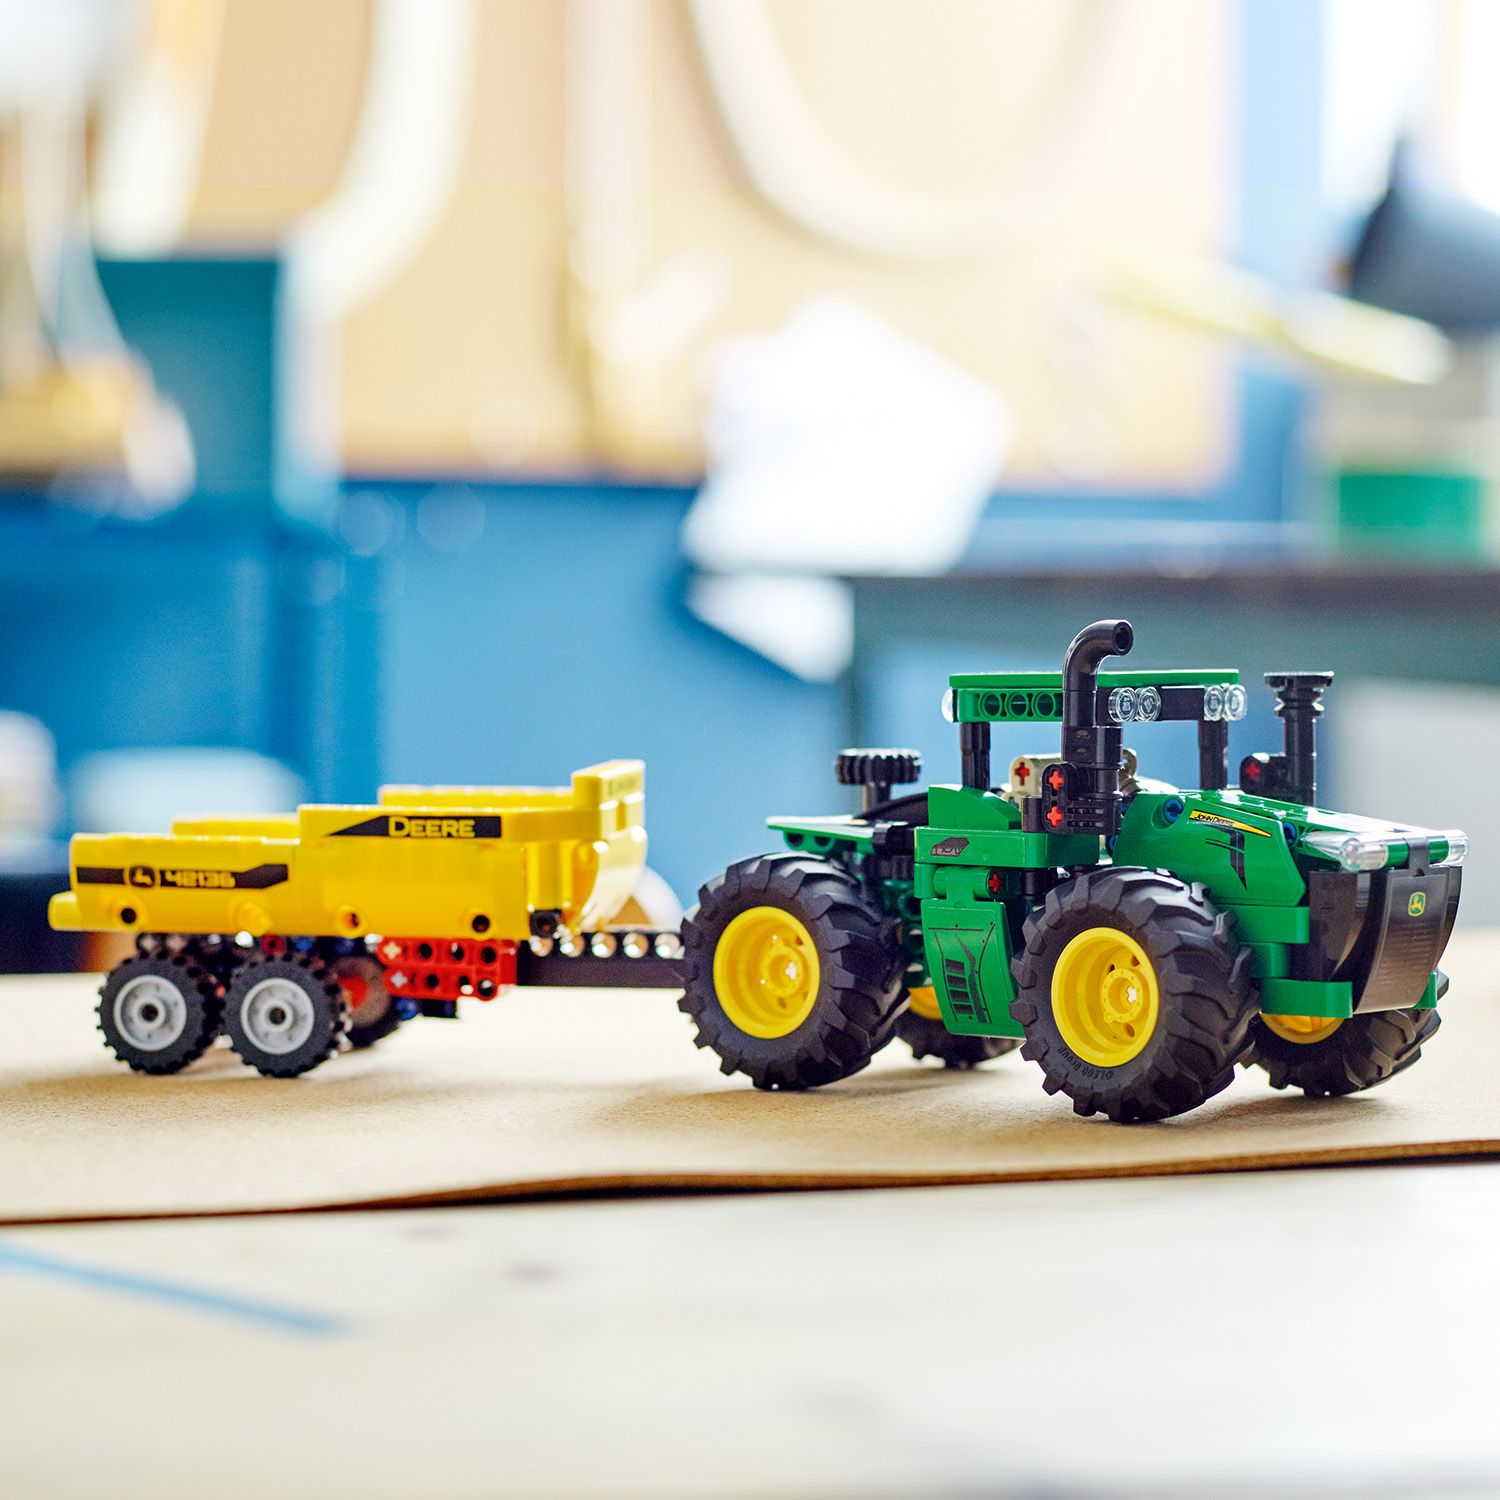 Skvělý dárek pro děti, které milují traktory